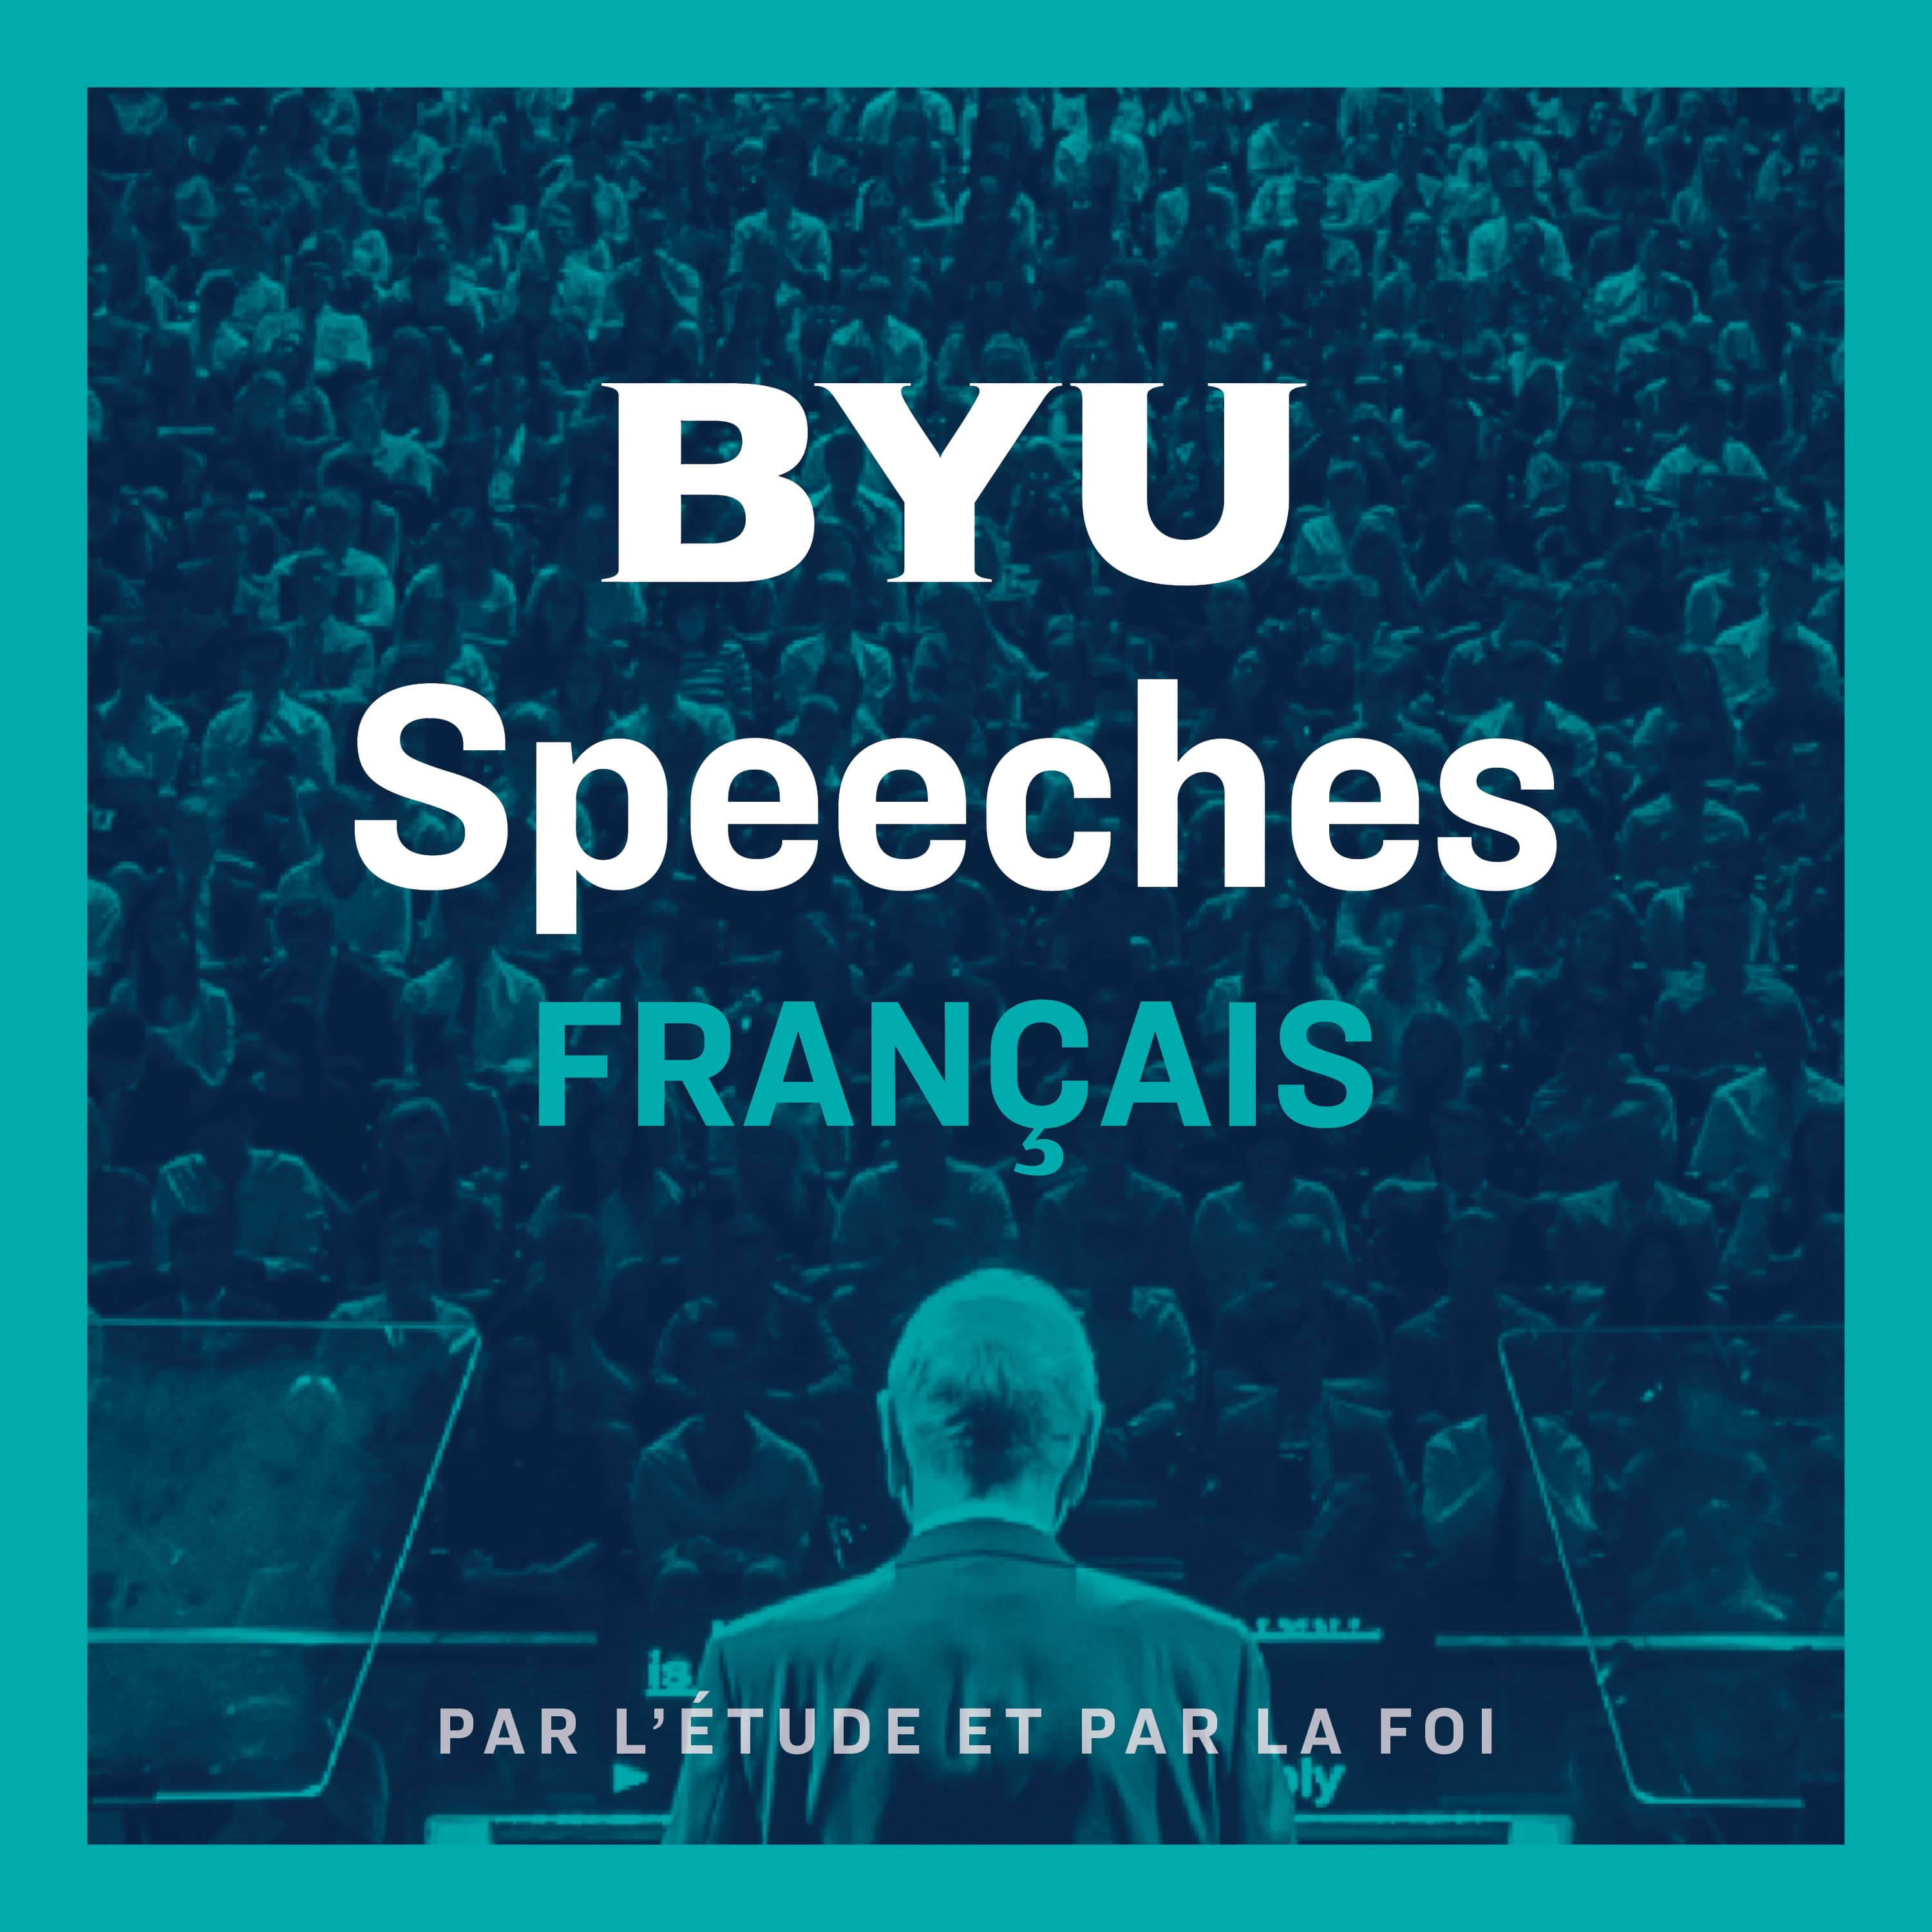 BYU Speeches Français